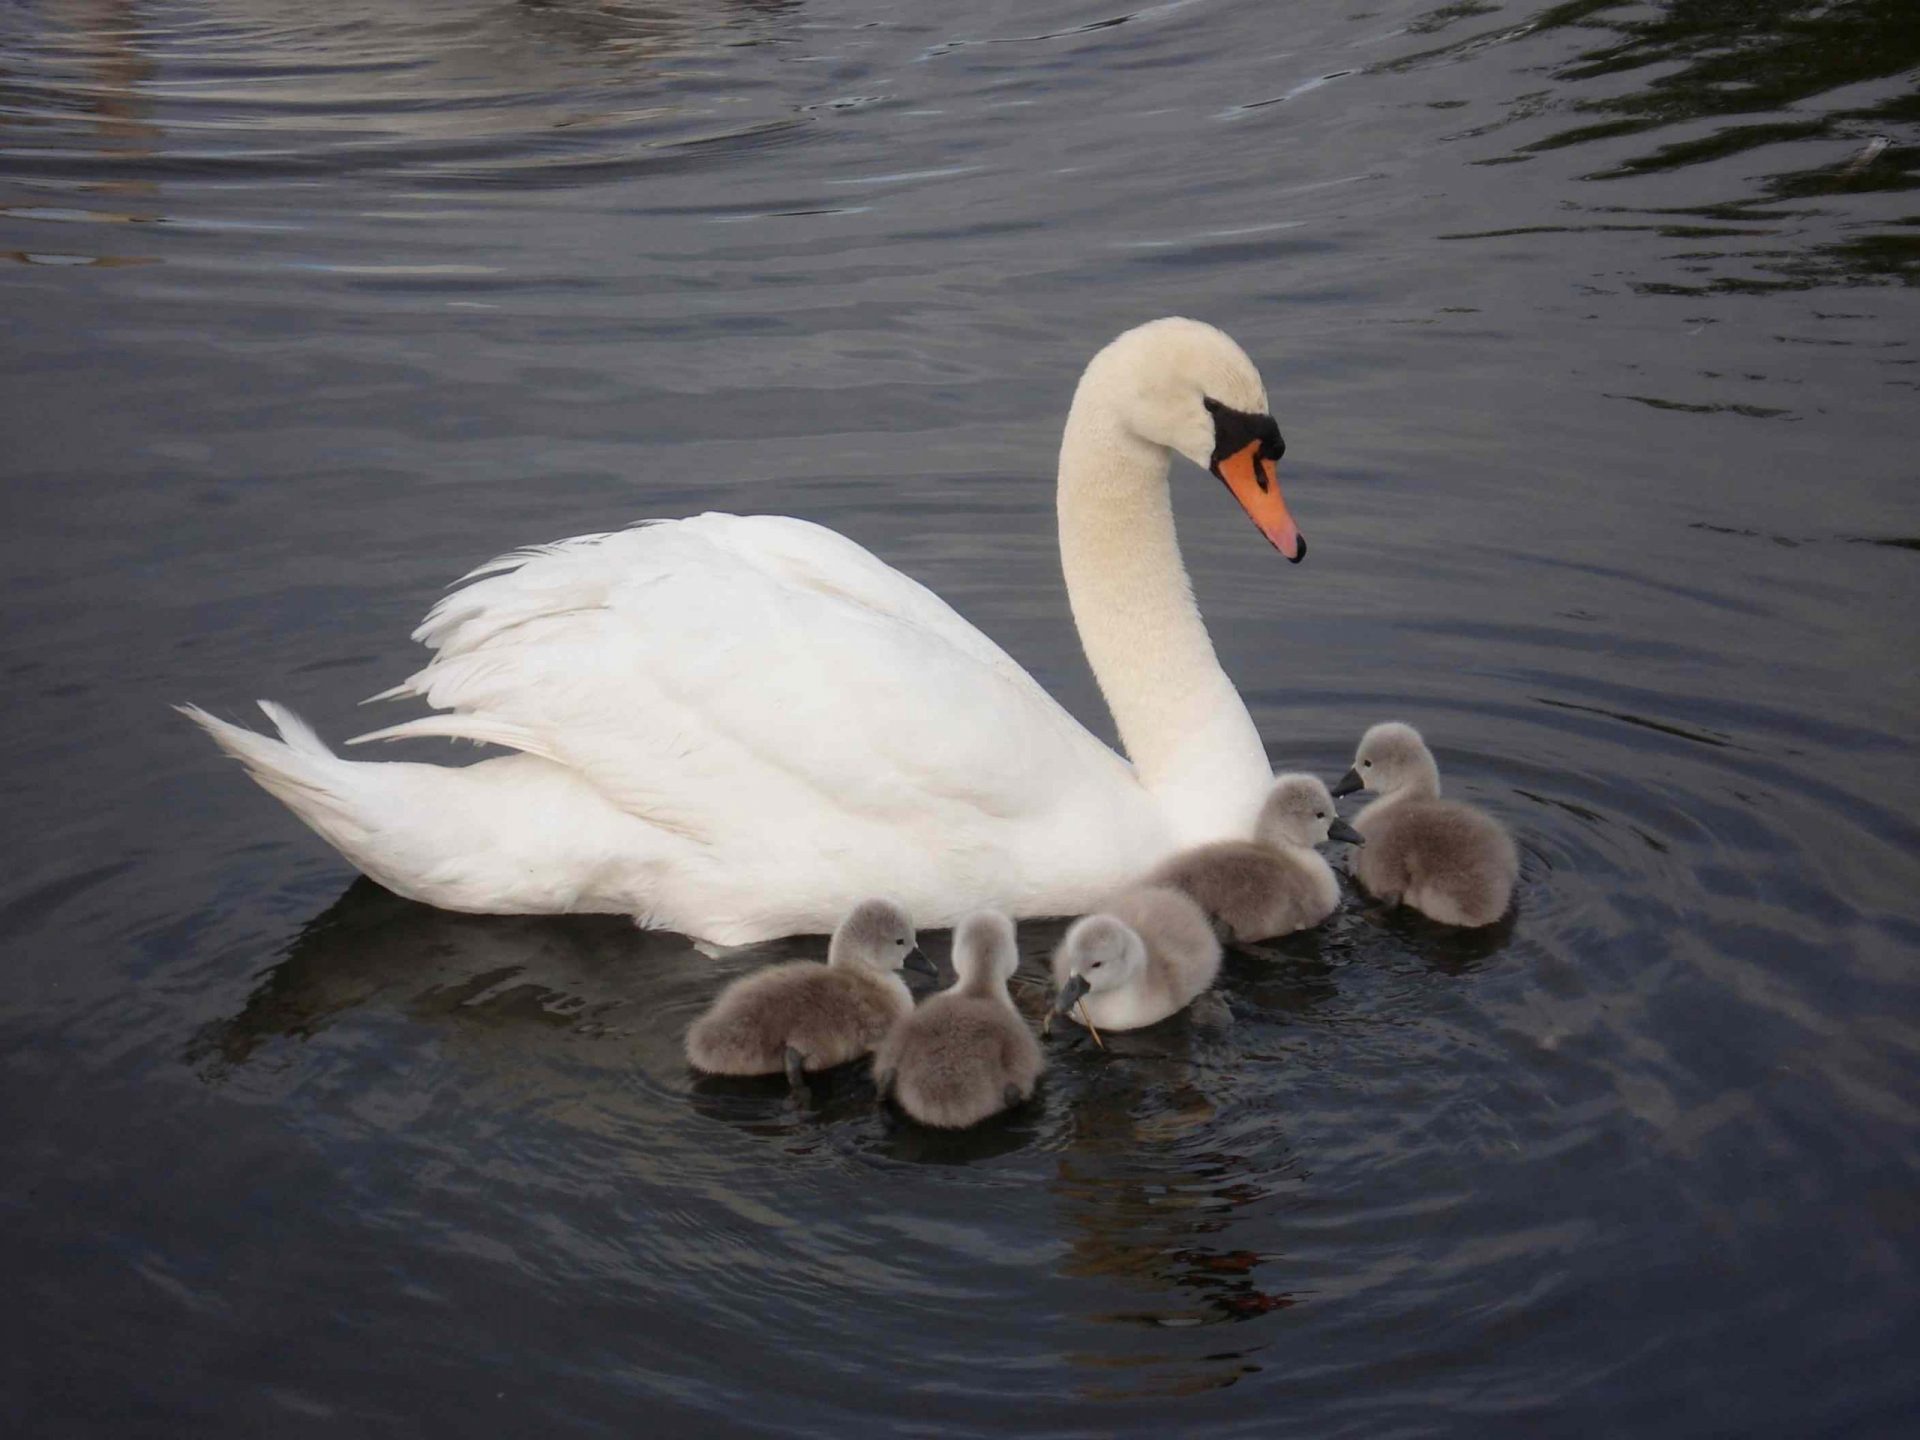 cisne mudo hembra y sus cinco crías recién nacidas nadando en un lago